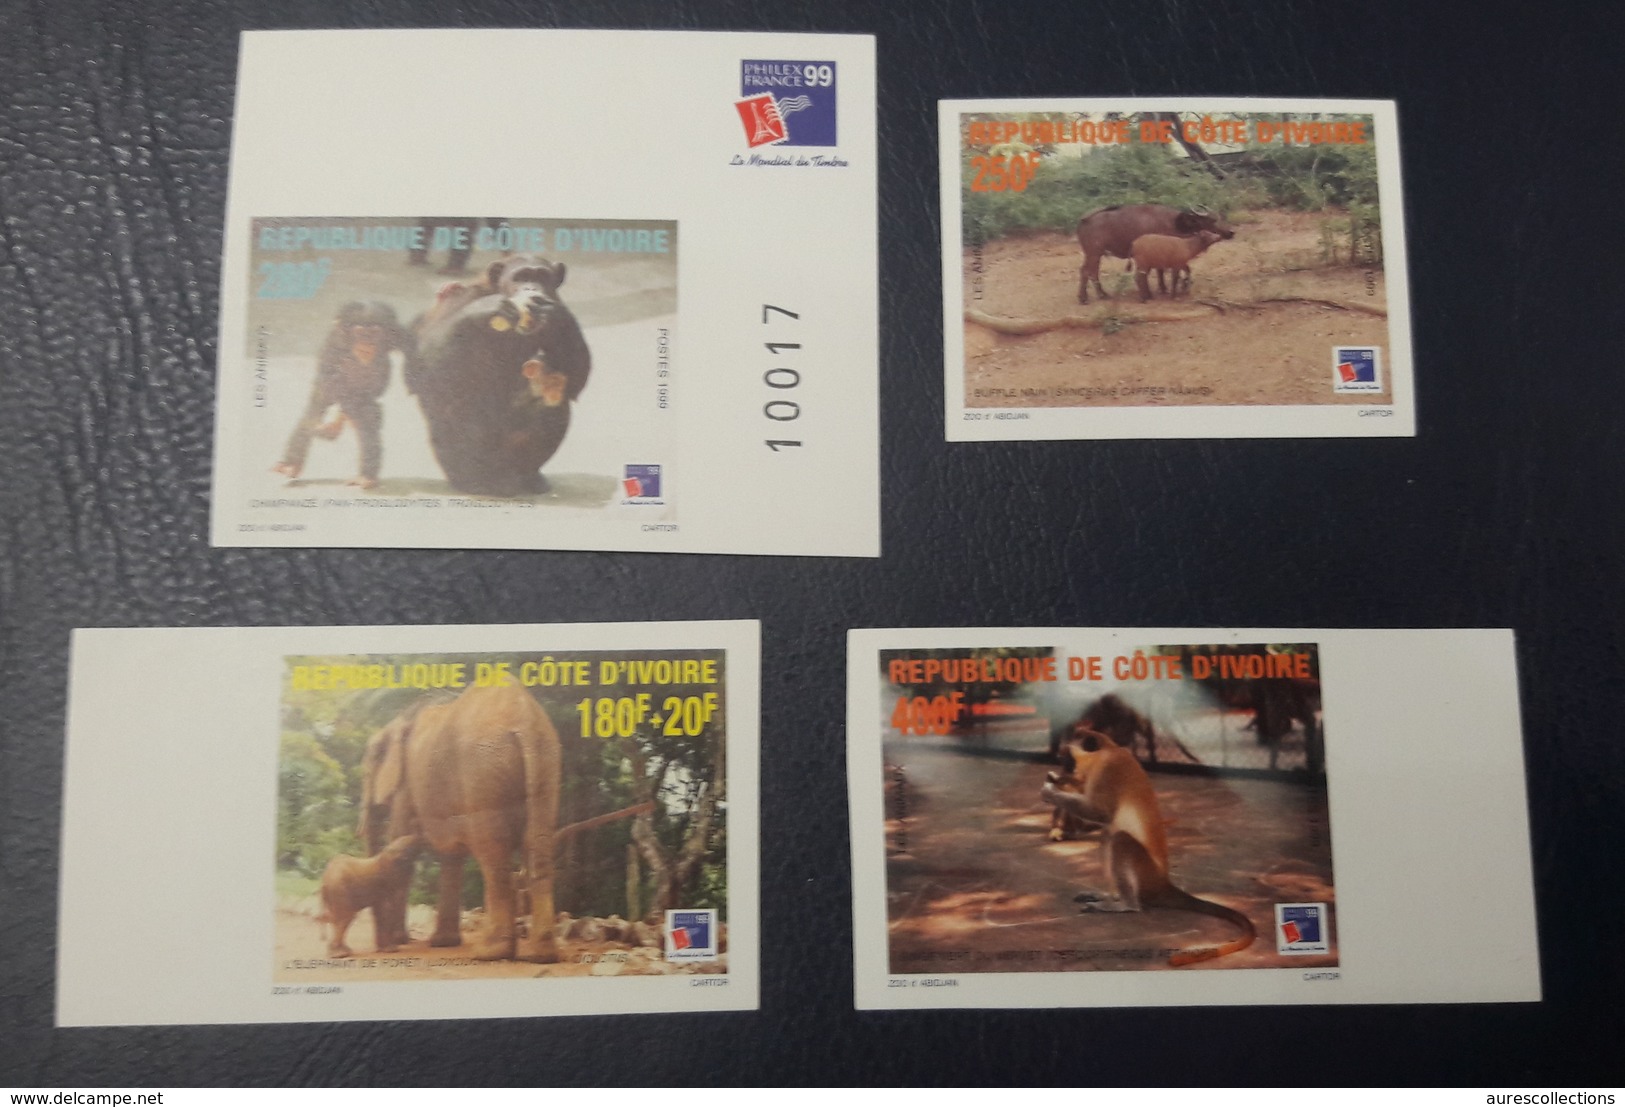 COTE D'IVOIRE IVORY COAST 1999 - IMPERF NON DENTELE ND - ANIMALS APES MONKEYS SINGES ELEPHANTS PHILEXAFRIQUE CHIMPANZE - Chimpancés